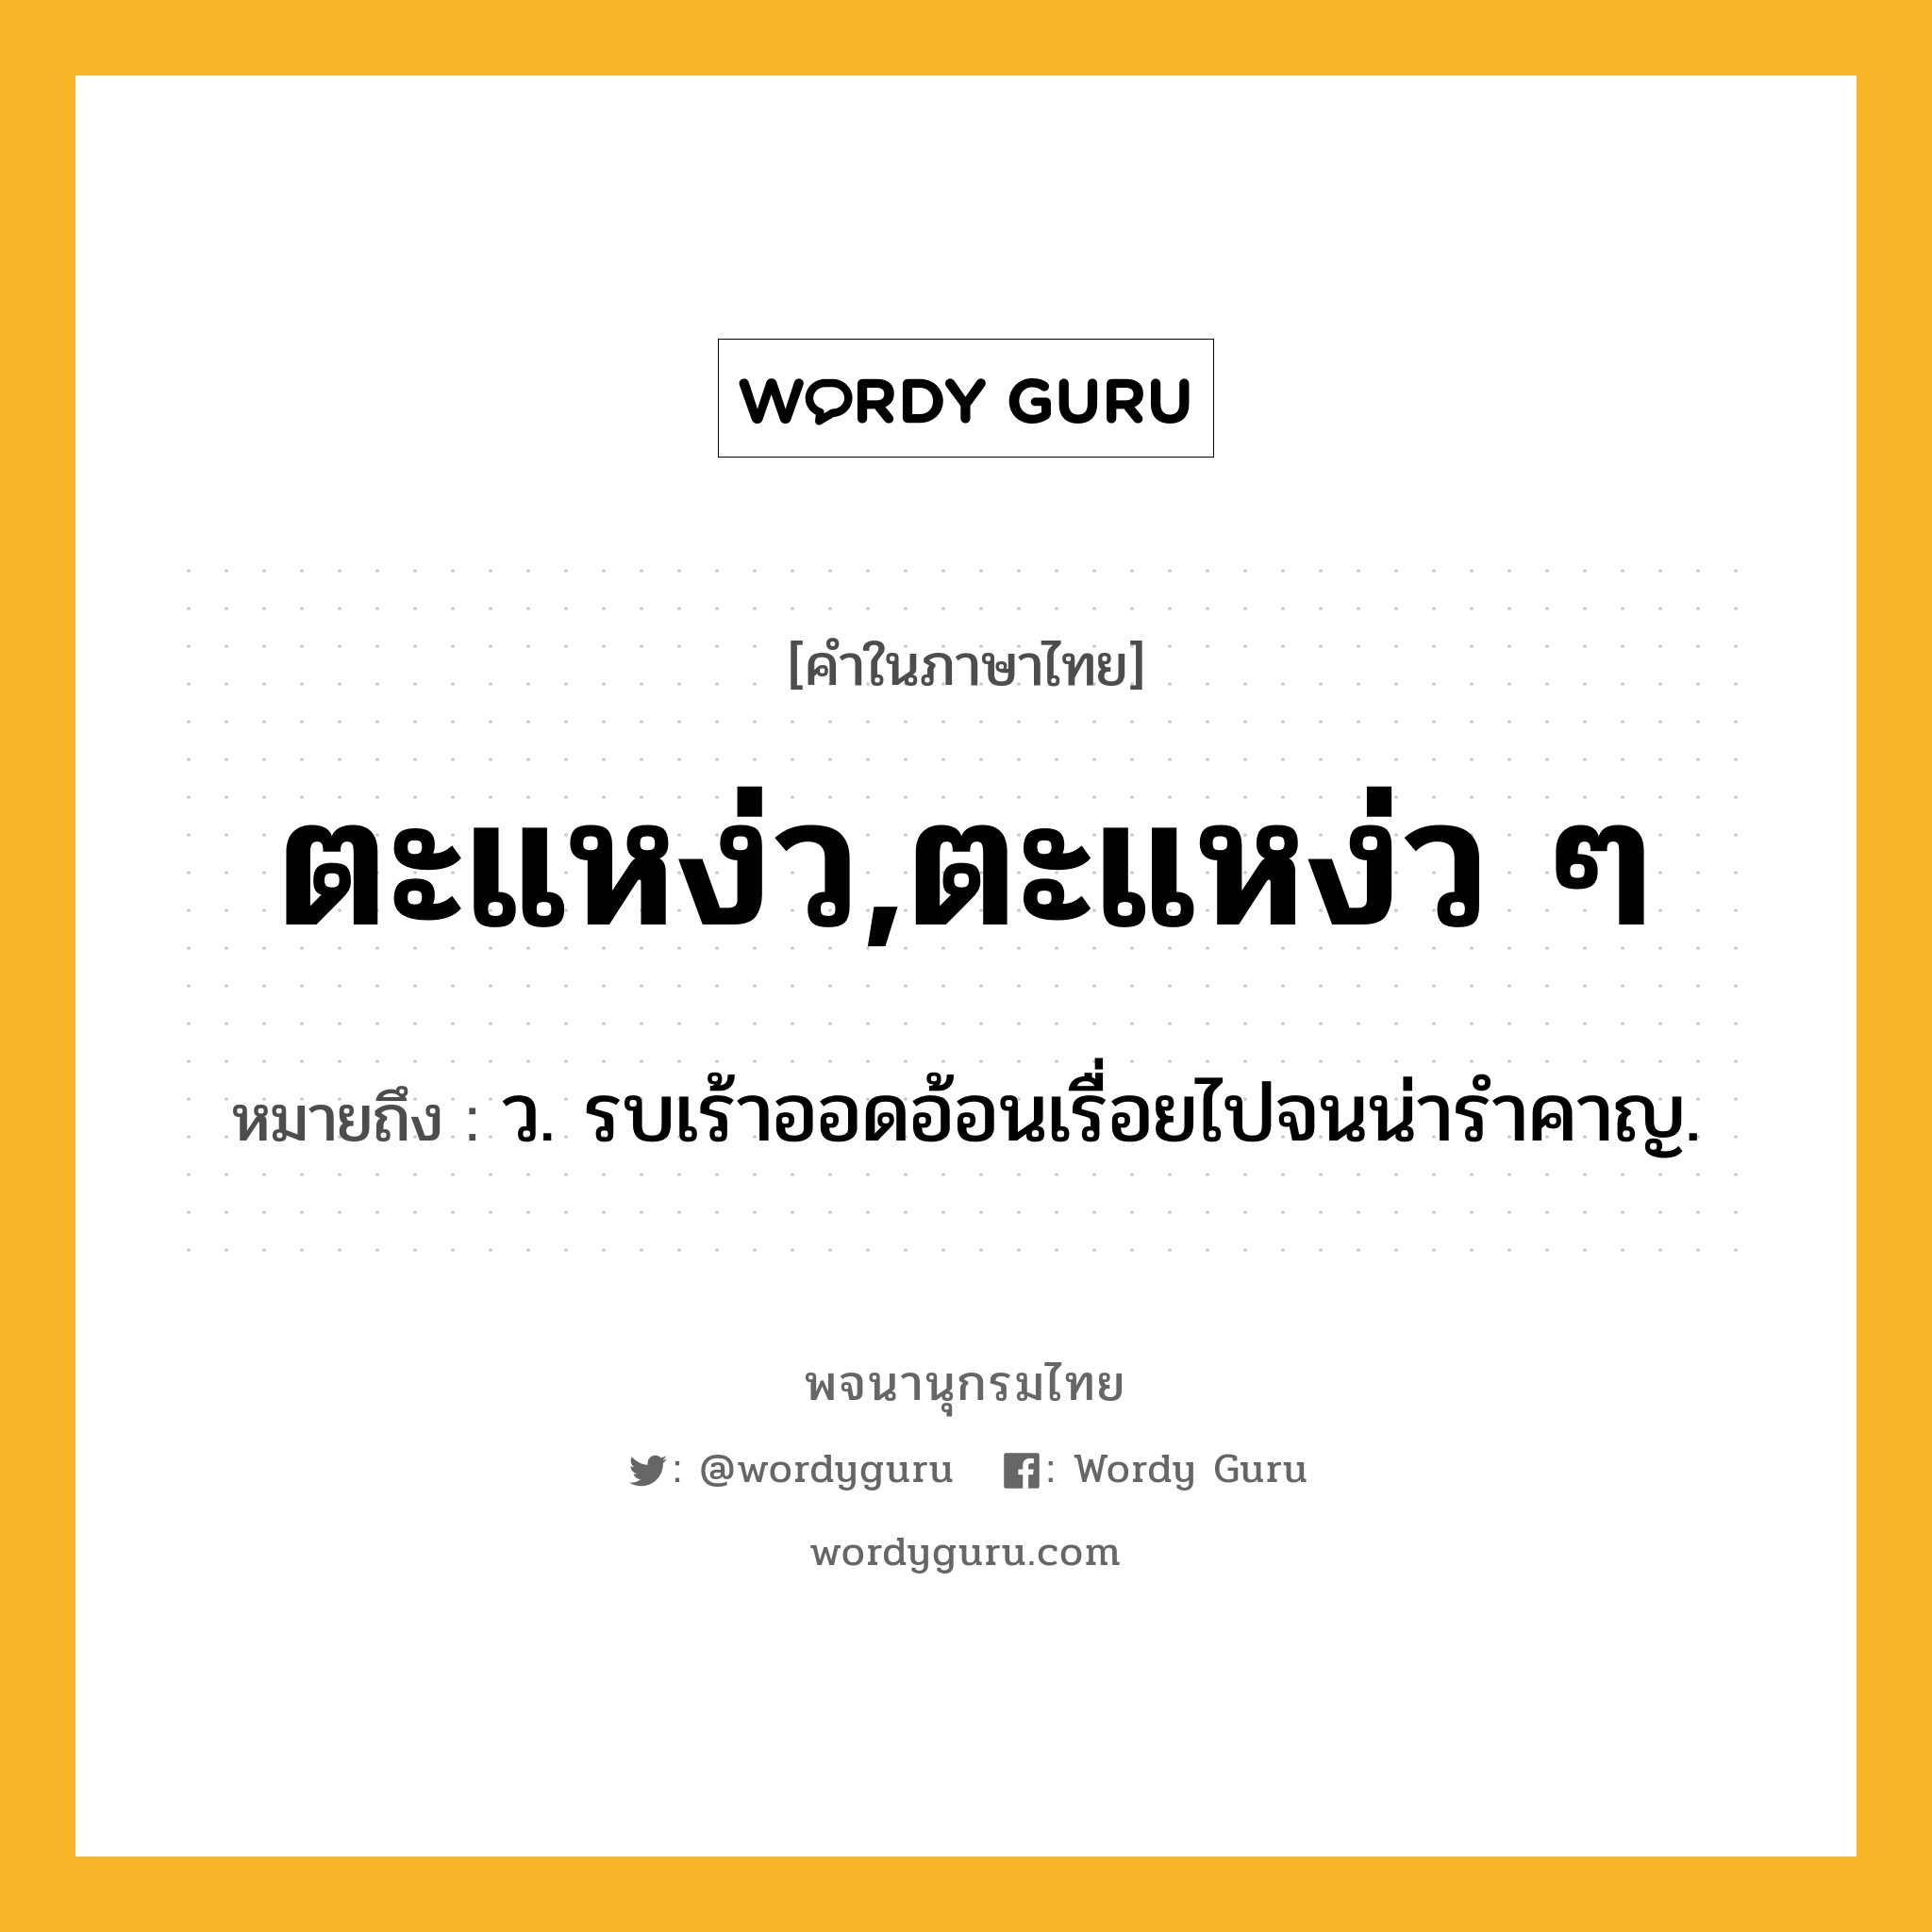 ตะแหง่ว,ตะแหง่ว ๆ หมายถึงอะไร?, คำในภาษาไทย ตะแหง่ว,ตะแหง่ว ๆ หมายถึง ว. รบเร้าออดอ้อนเรื่อยไปจนน่ารําคาญ.